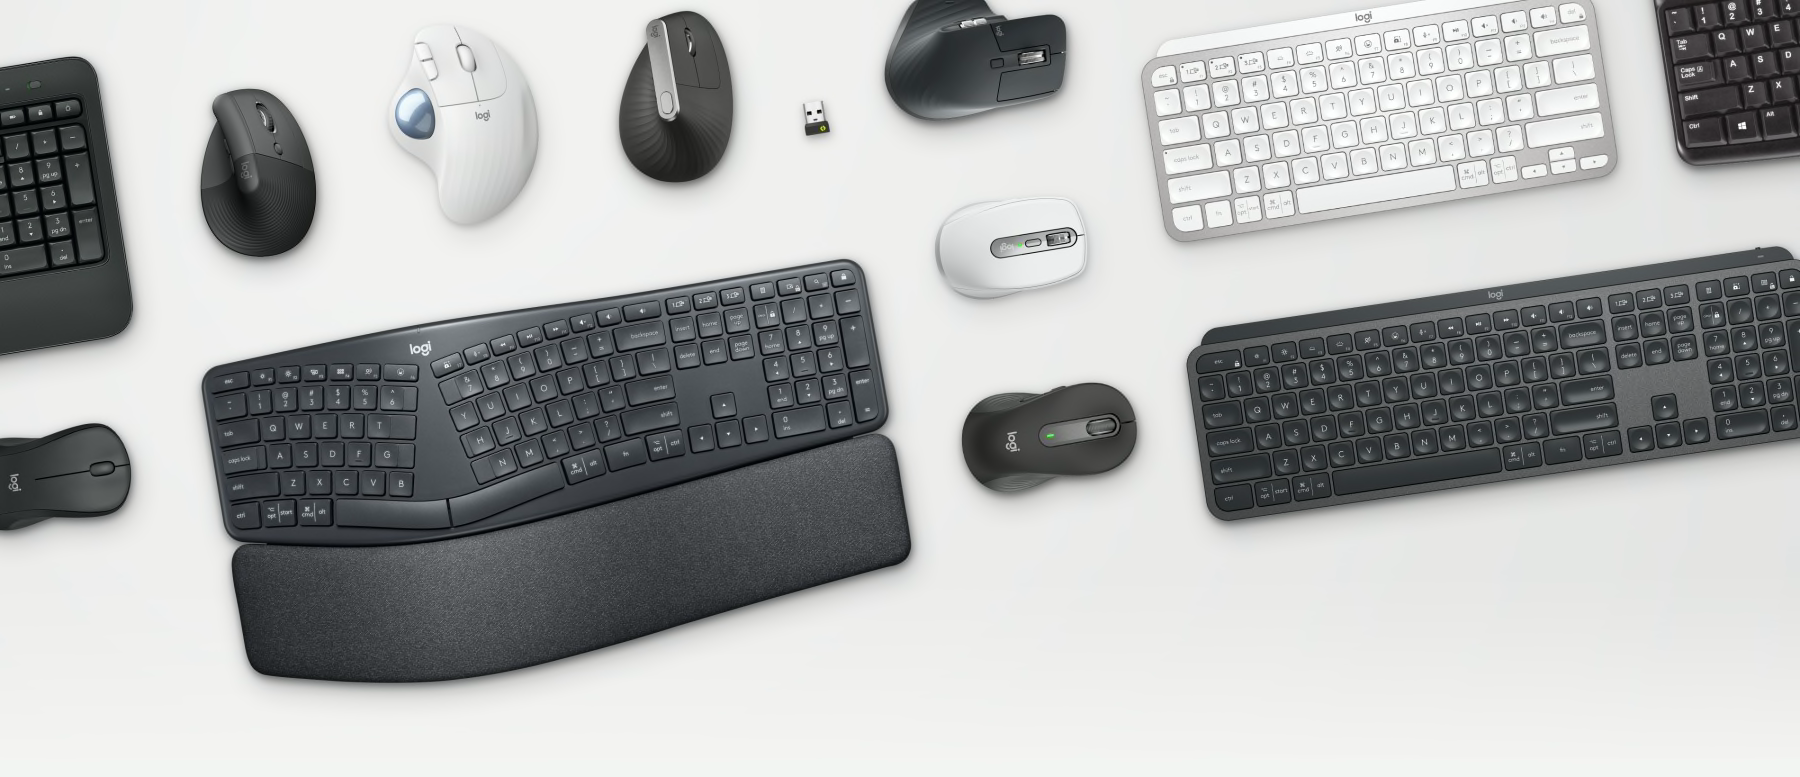 Perangkat bisnis - Mouse dan Keyboard Ergo di atas meja